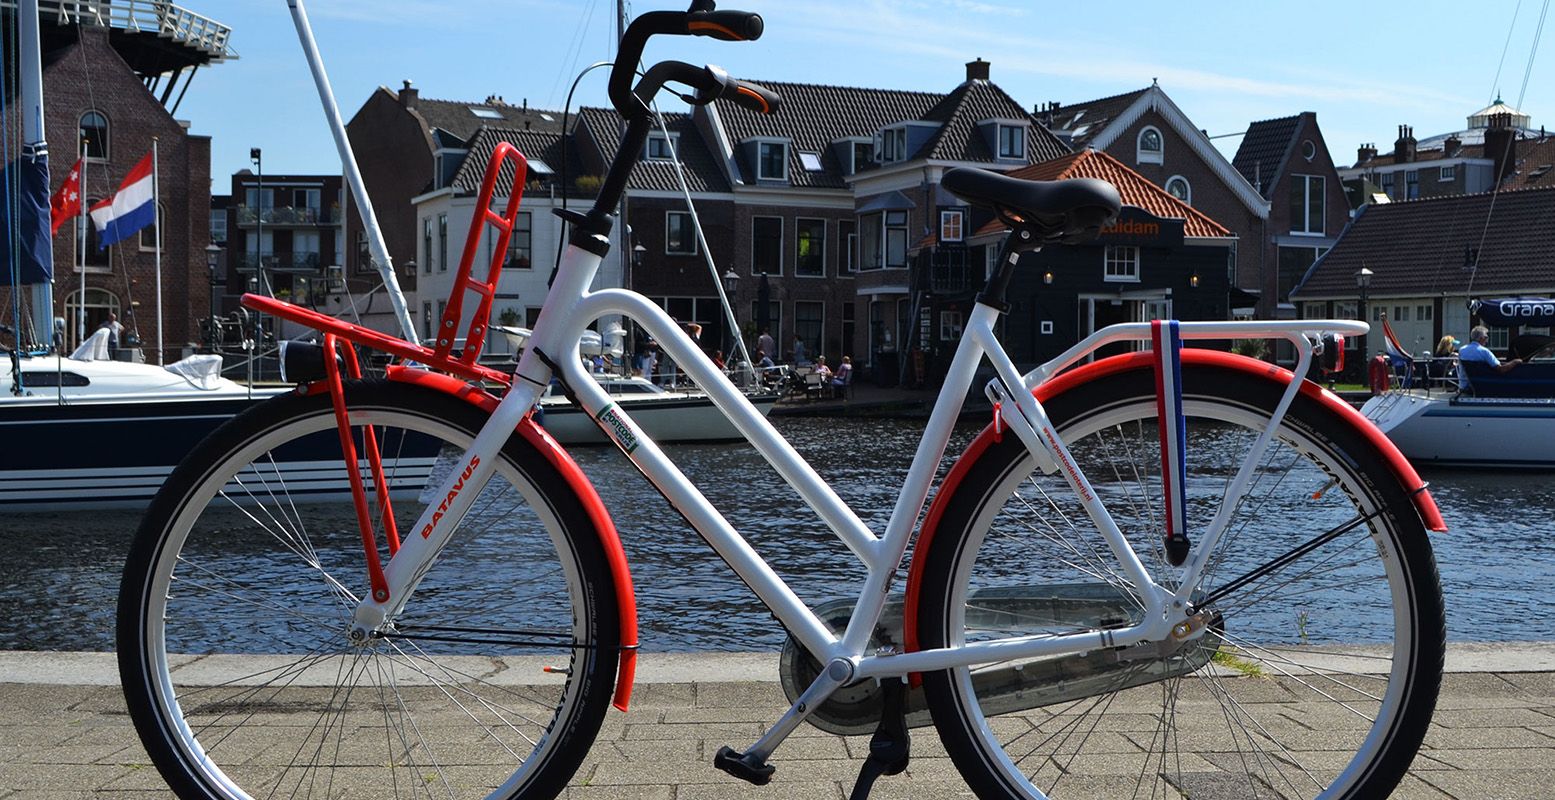 Met een comfortabele fiets door Haarlem. Foto: Bike Tours Haarlem